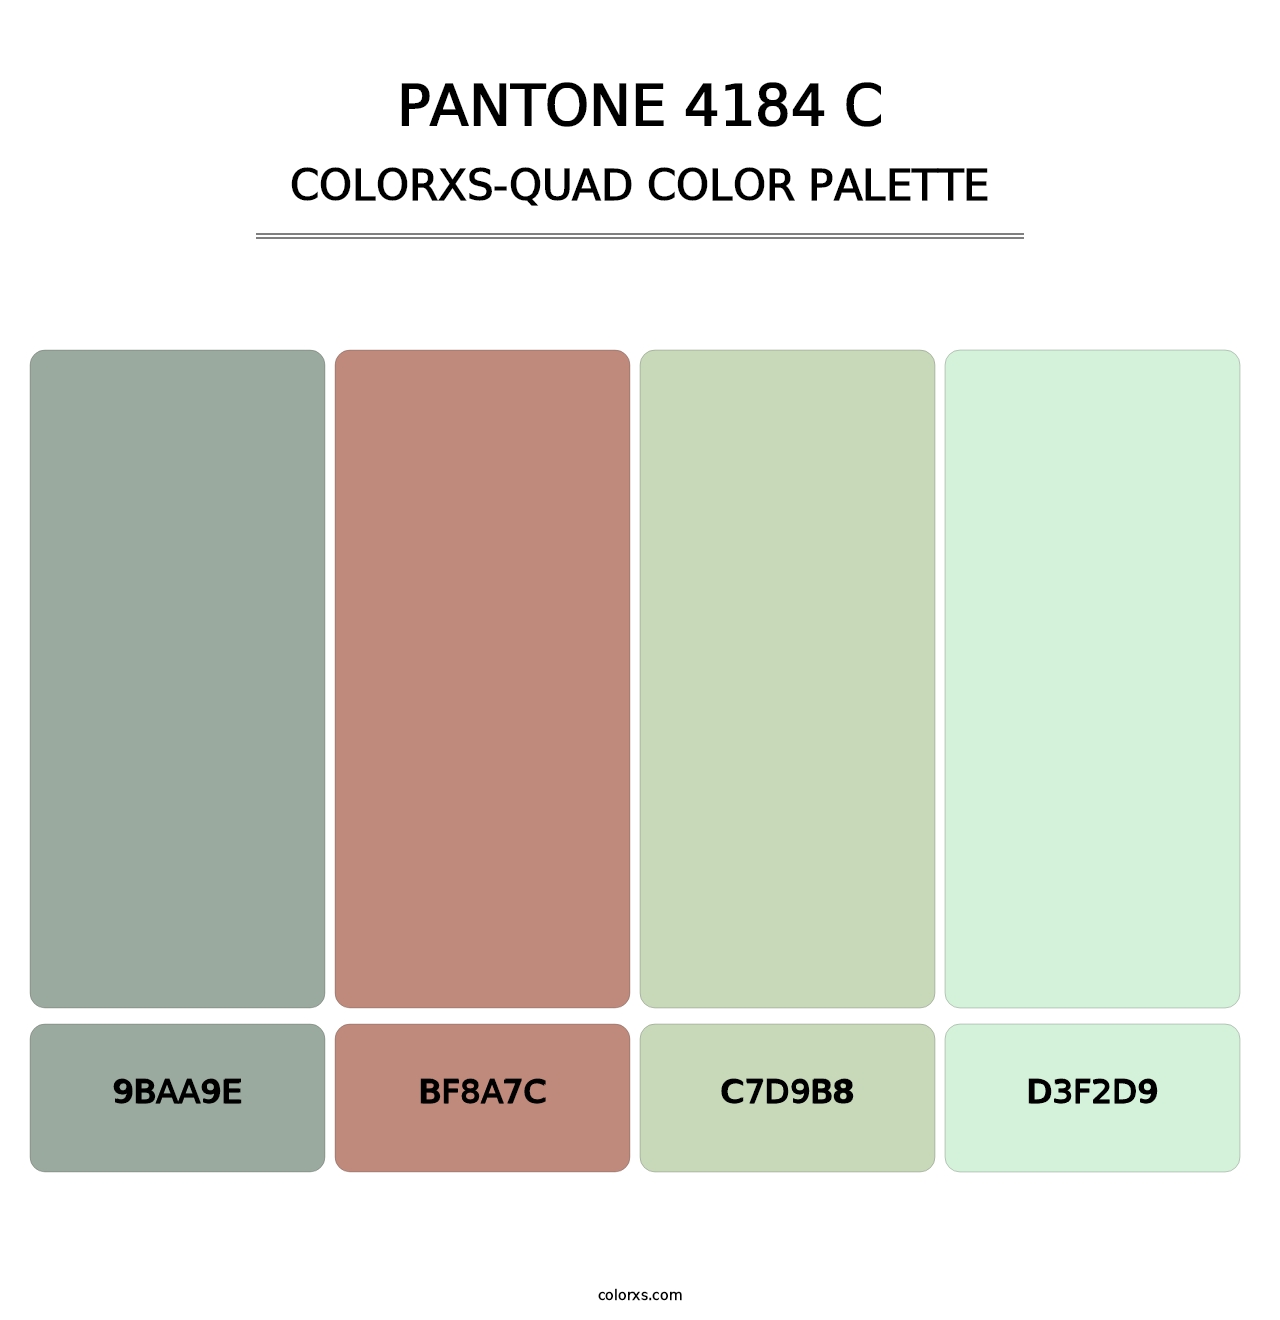 PANTONE 4184 C - Colorxs Quad Palette